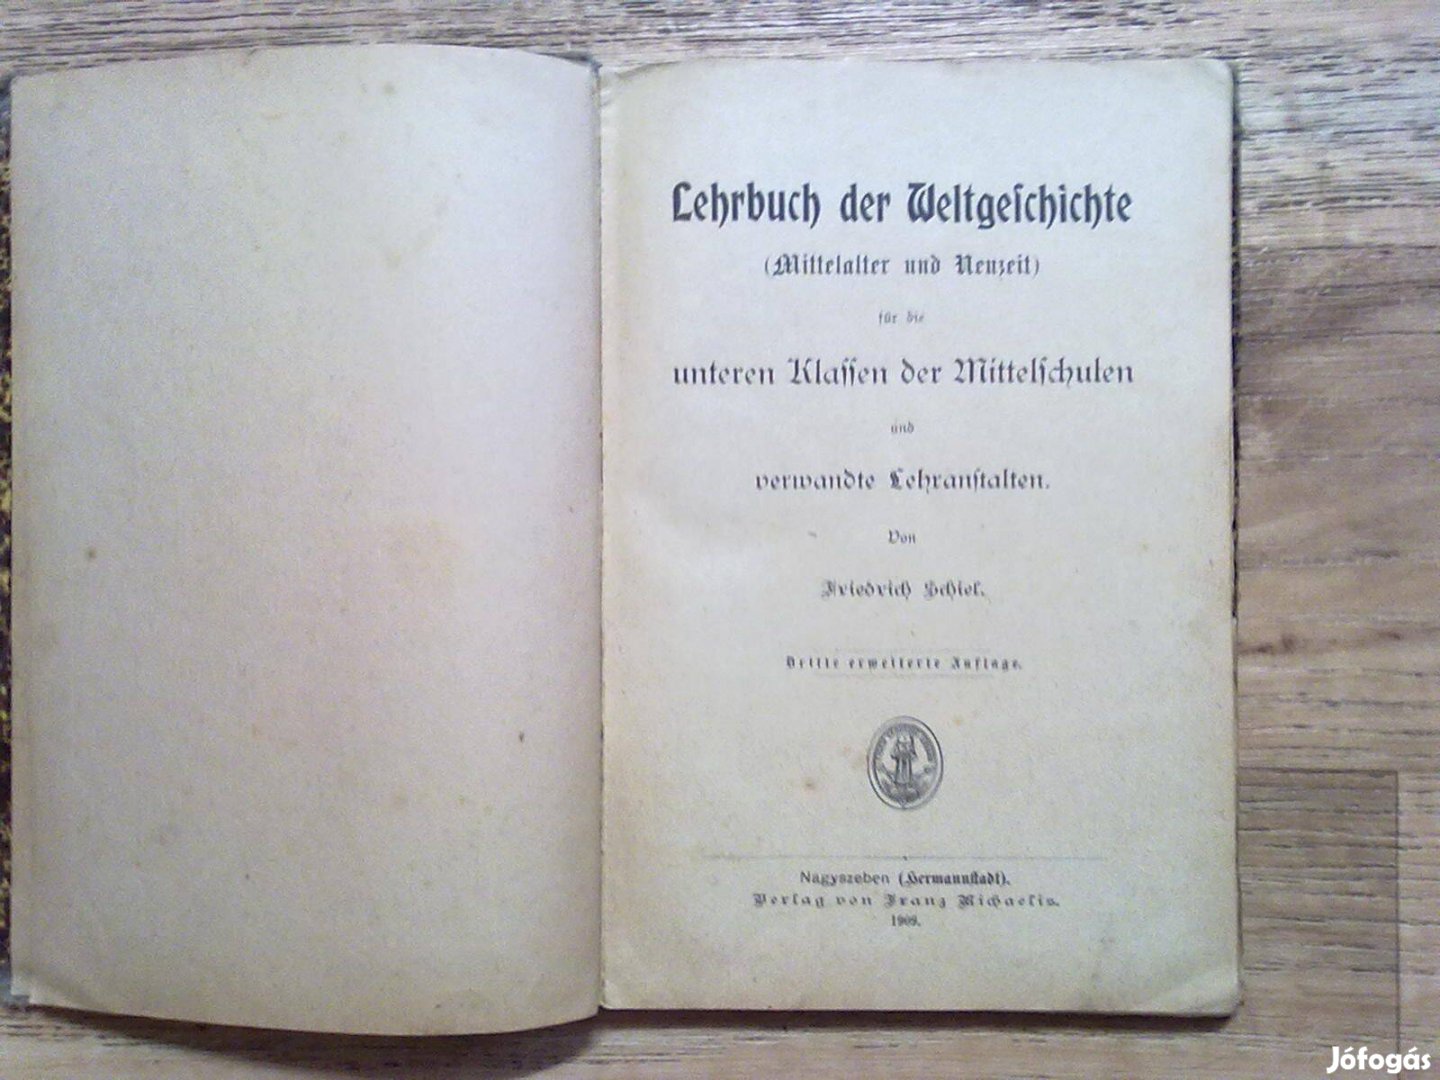 Lehrbuch der Weltgeschichte (Hermannstadt, 1909)